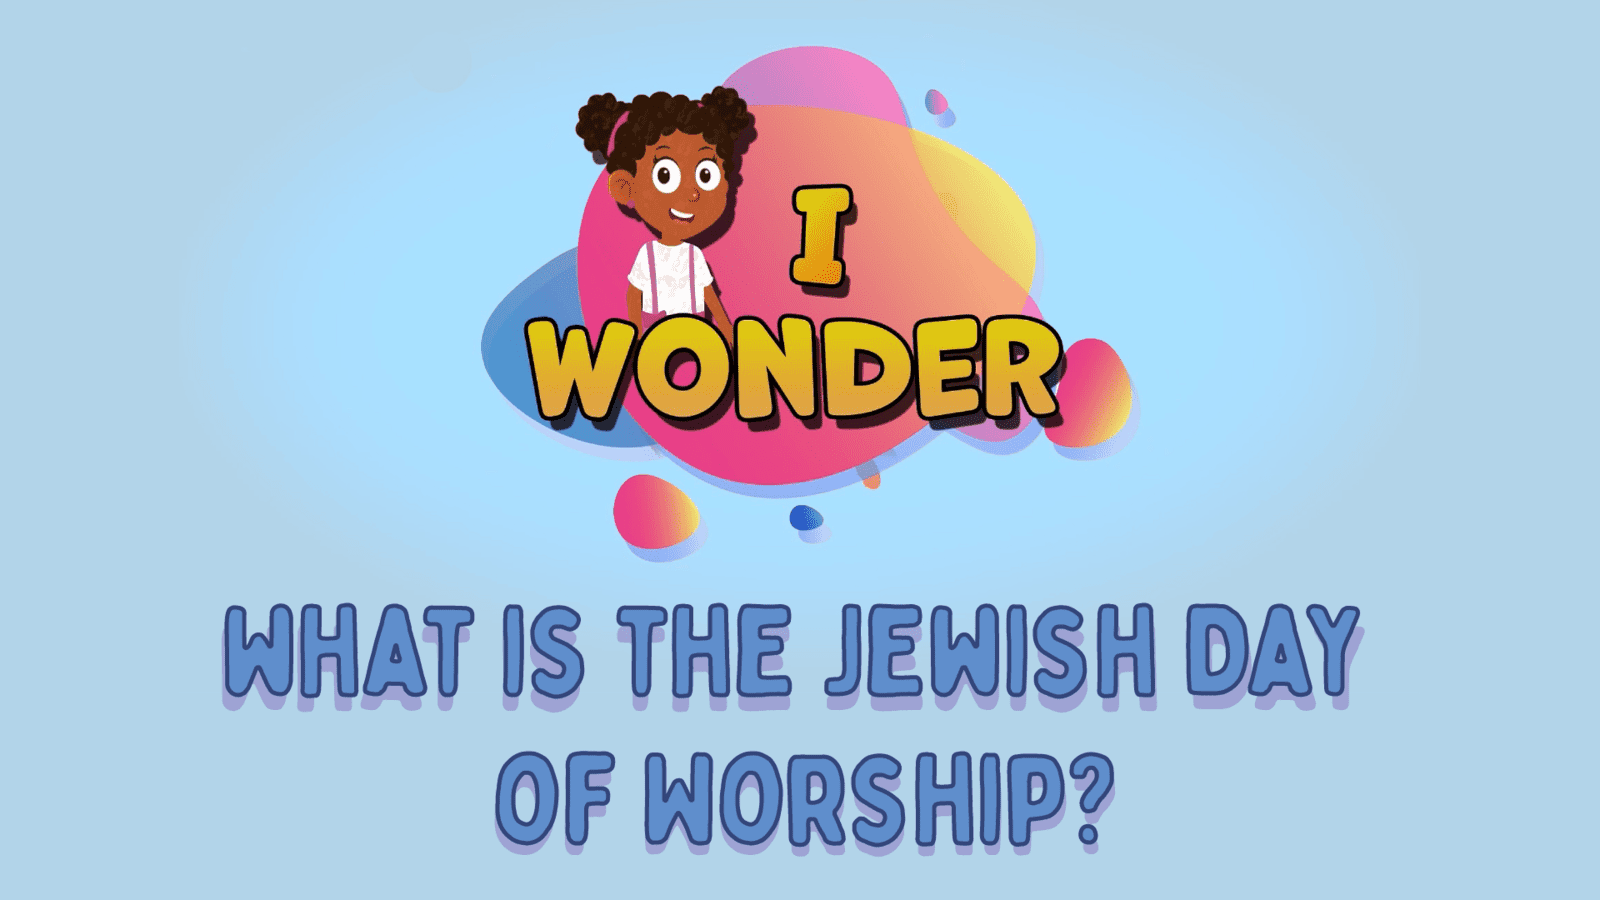 Jewish Day Of Worship LearningMole